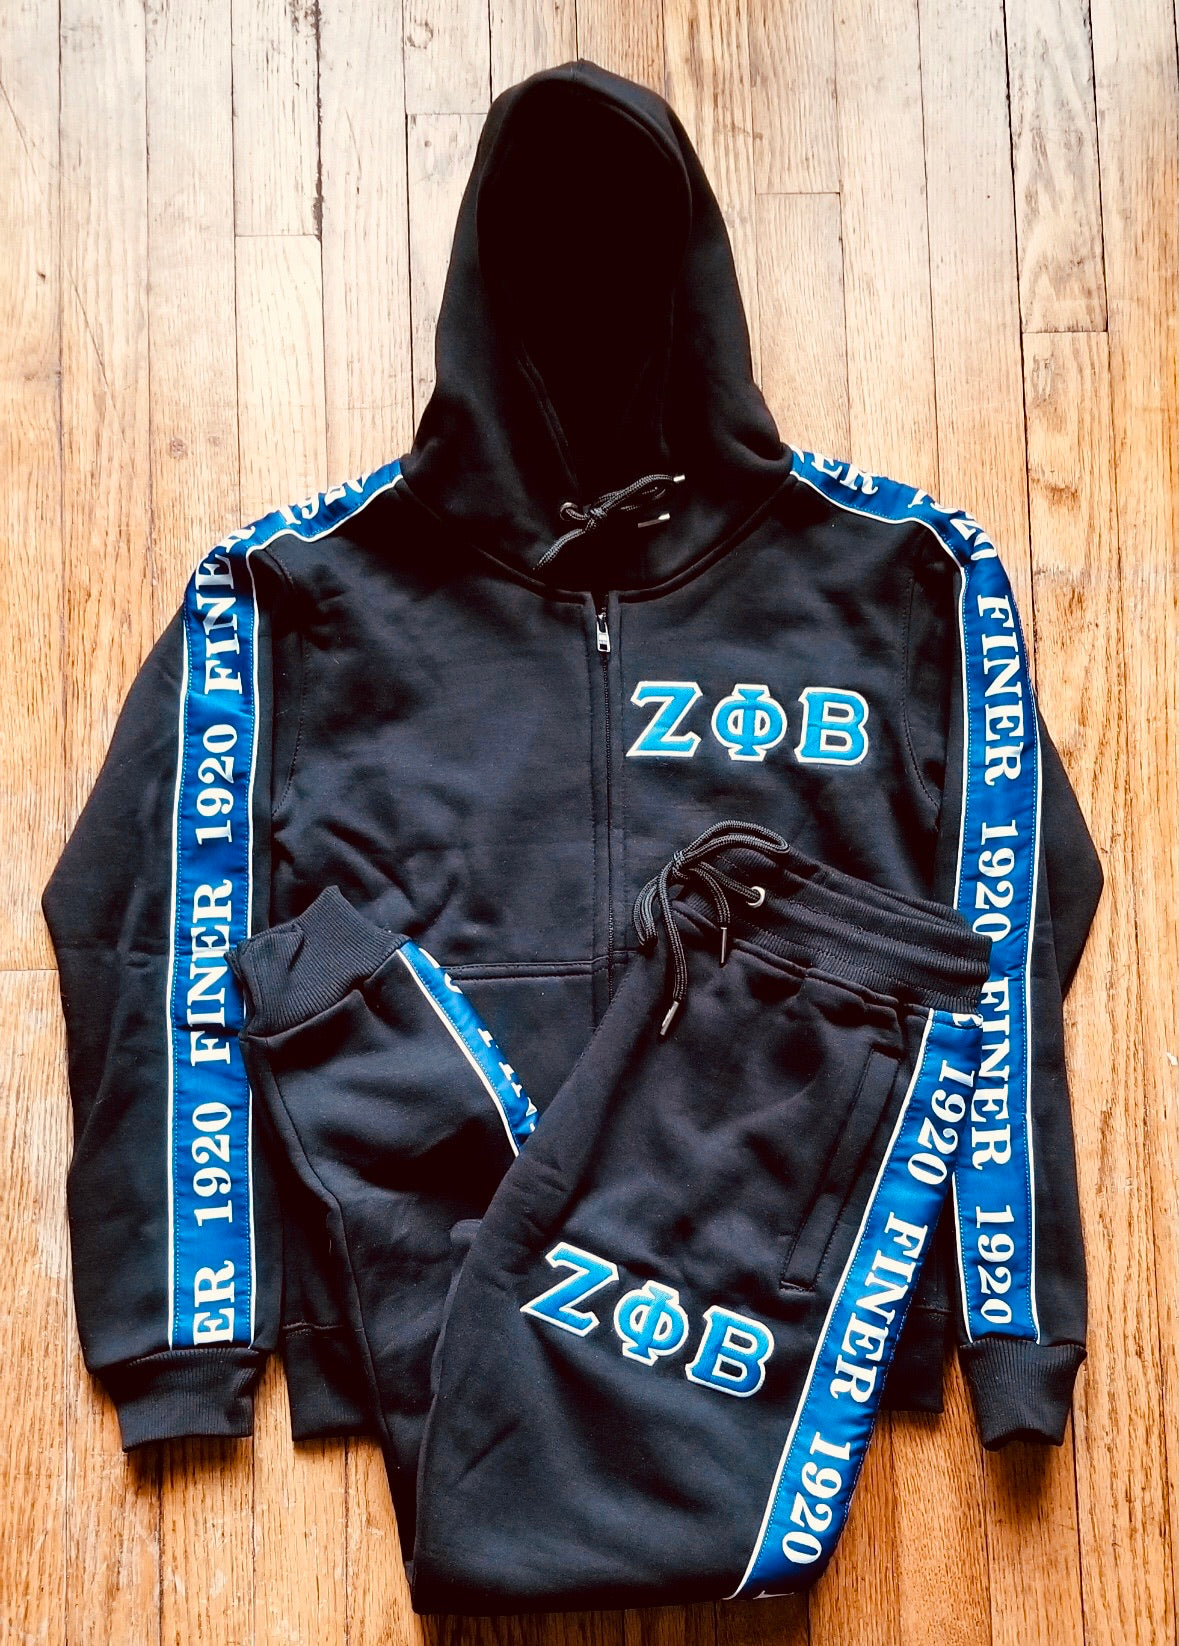 Zeta Black Tapered Jacket (Unisex Size)